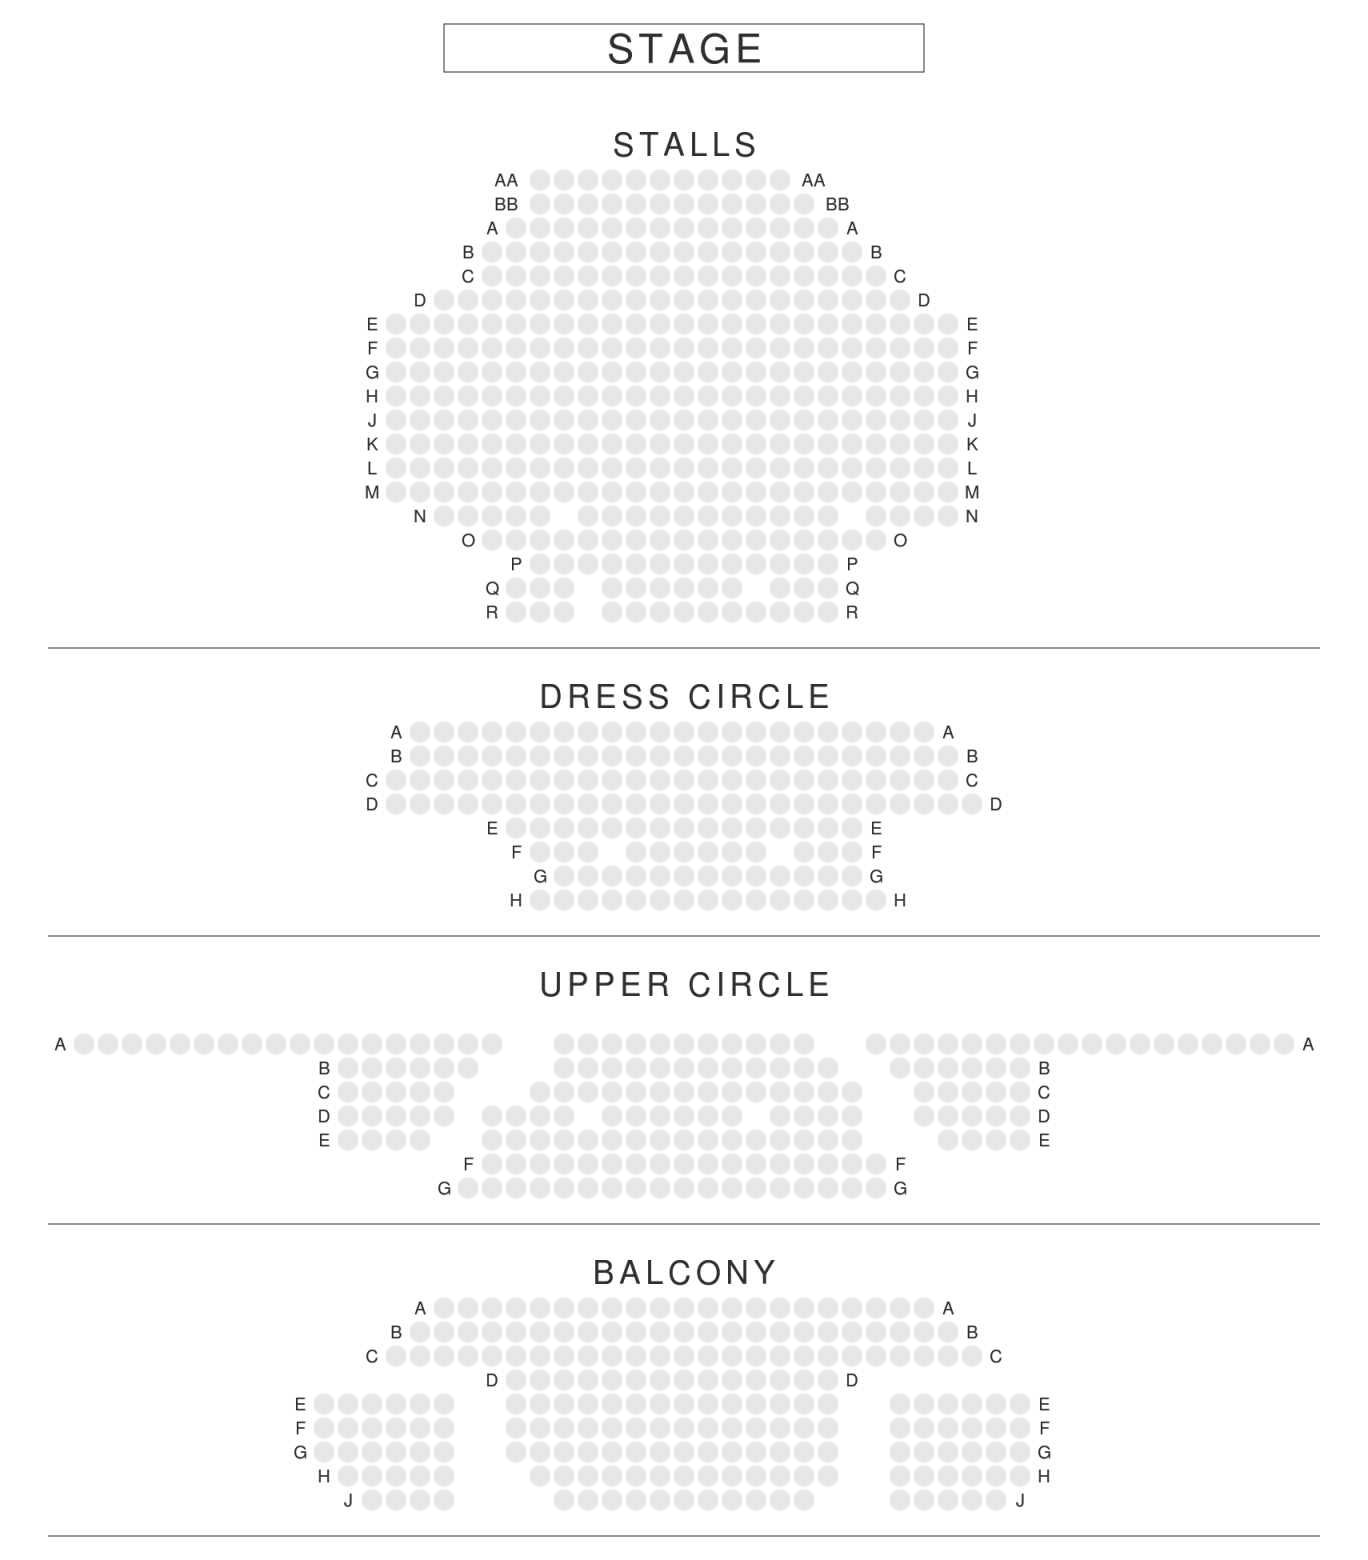 Lyric Theatre London Seating Plan  Reviews  Seatplan von Lyric Opera Seating Chart Bild